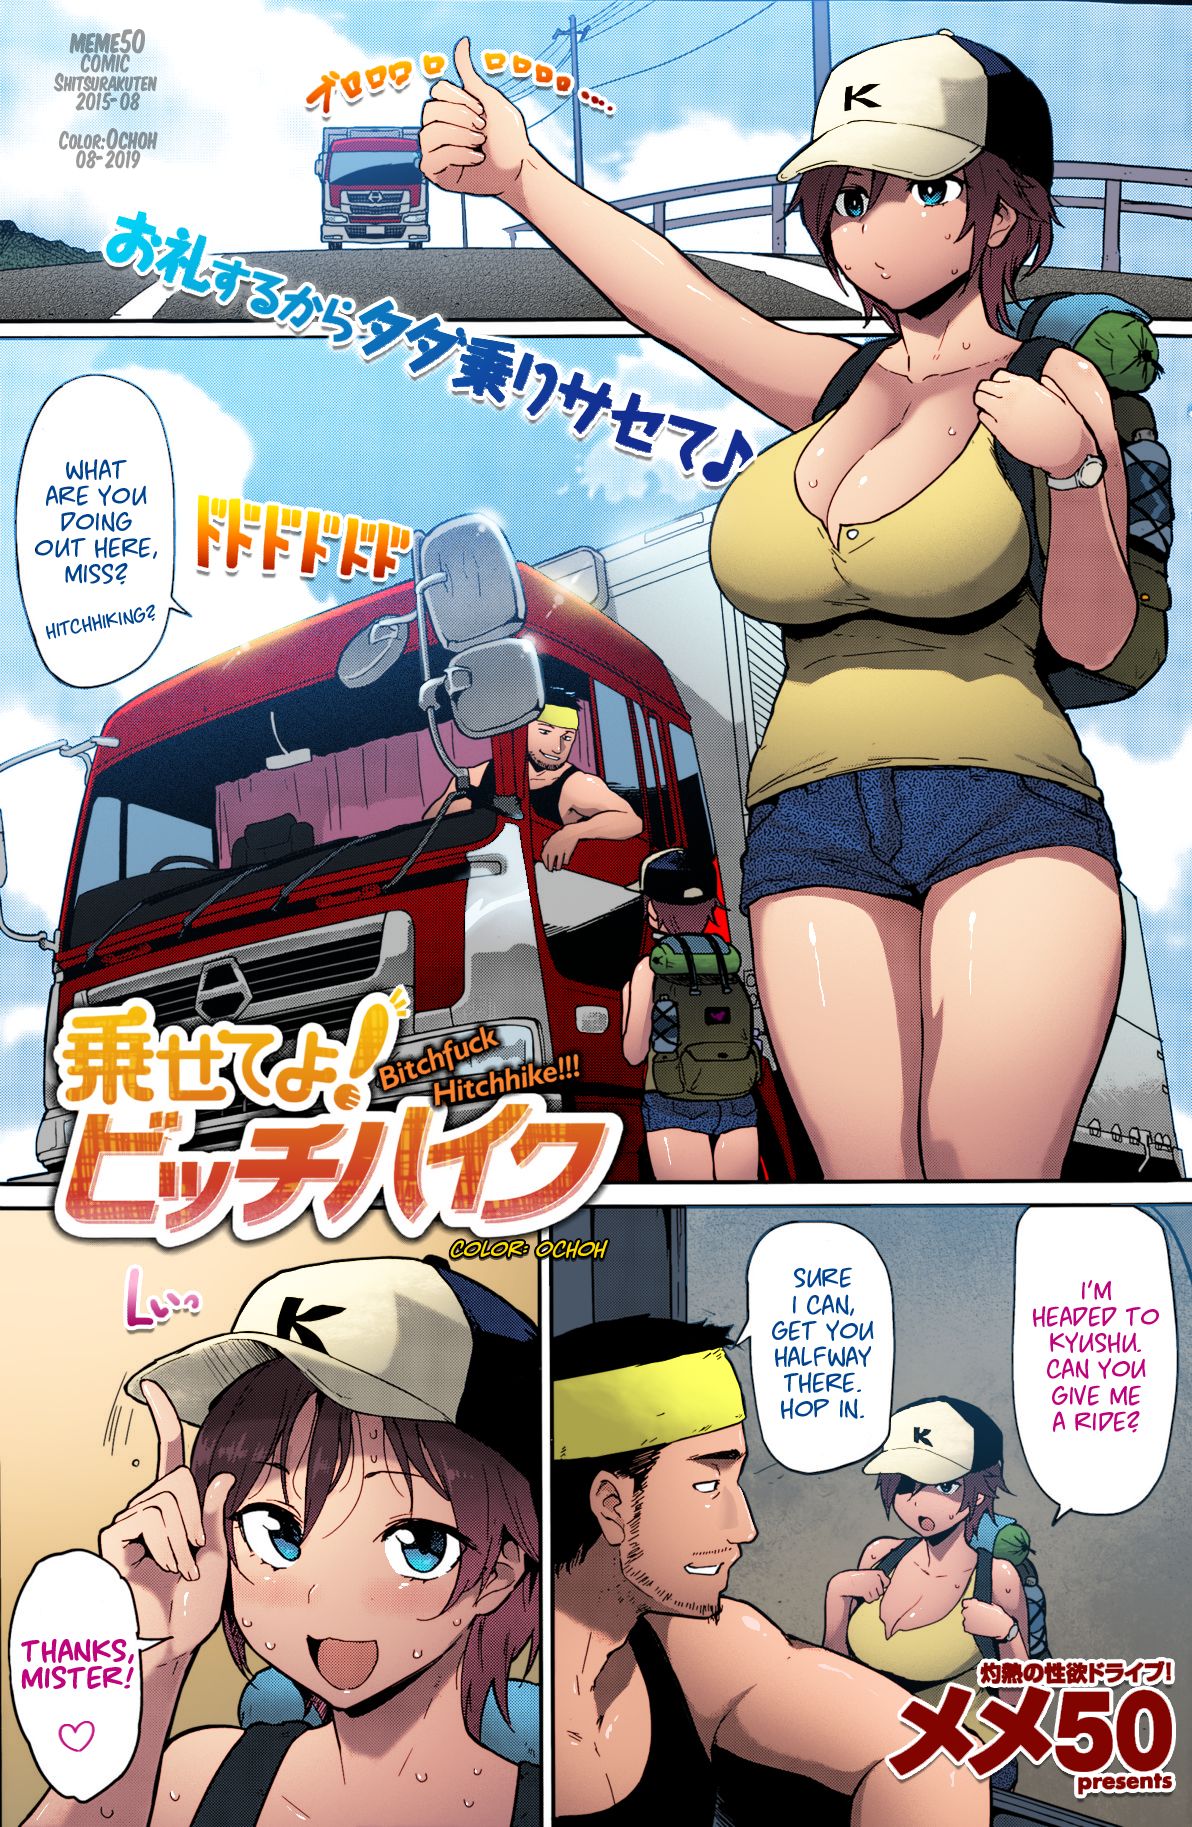 nHentai - Hentai Manga, Doujinshi and Comics